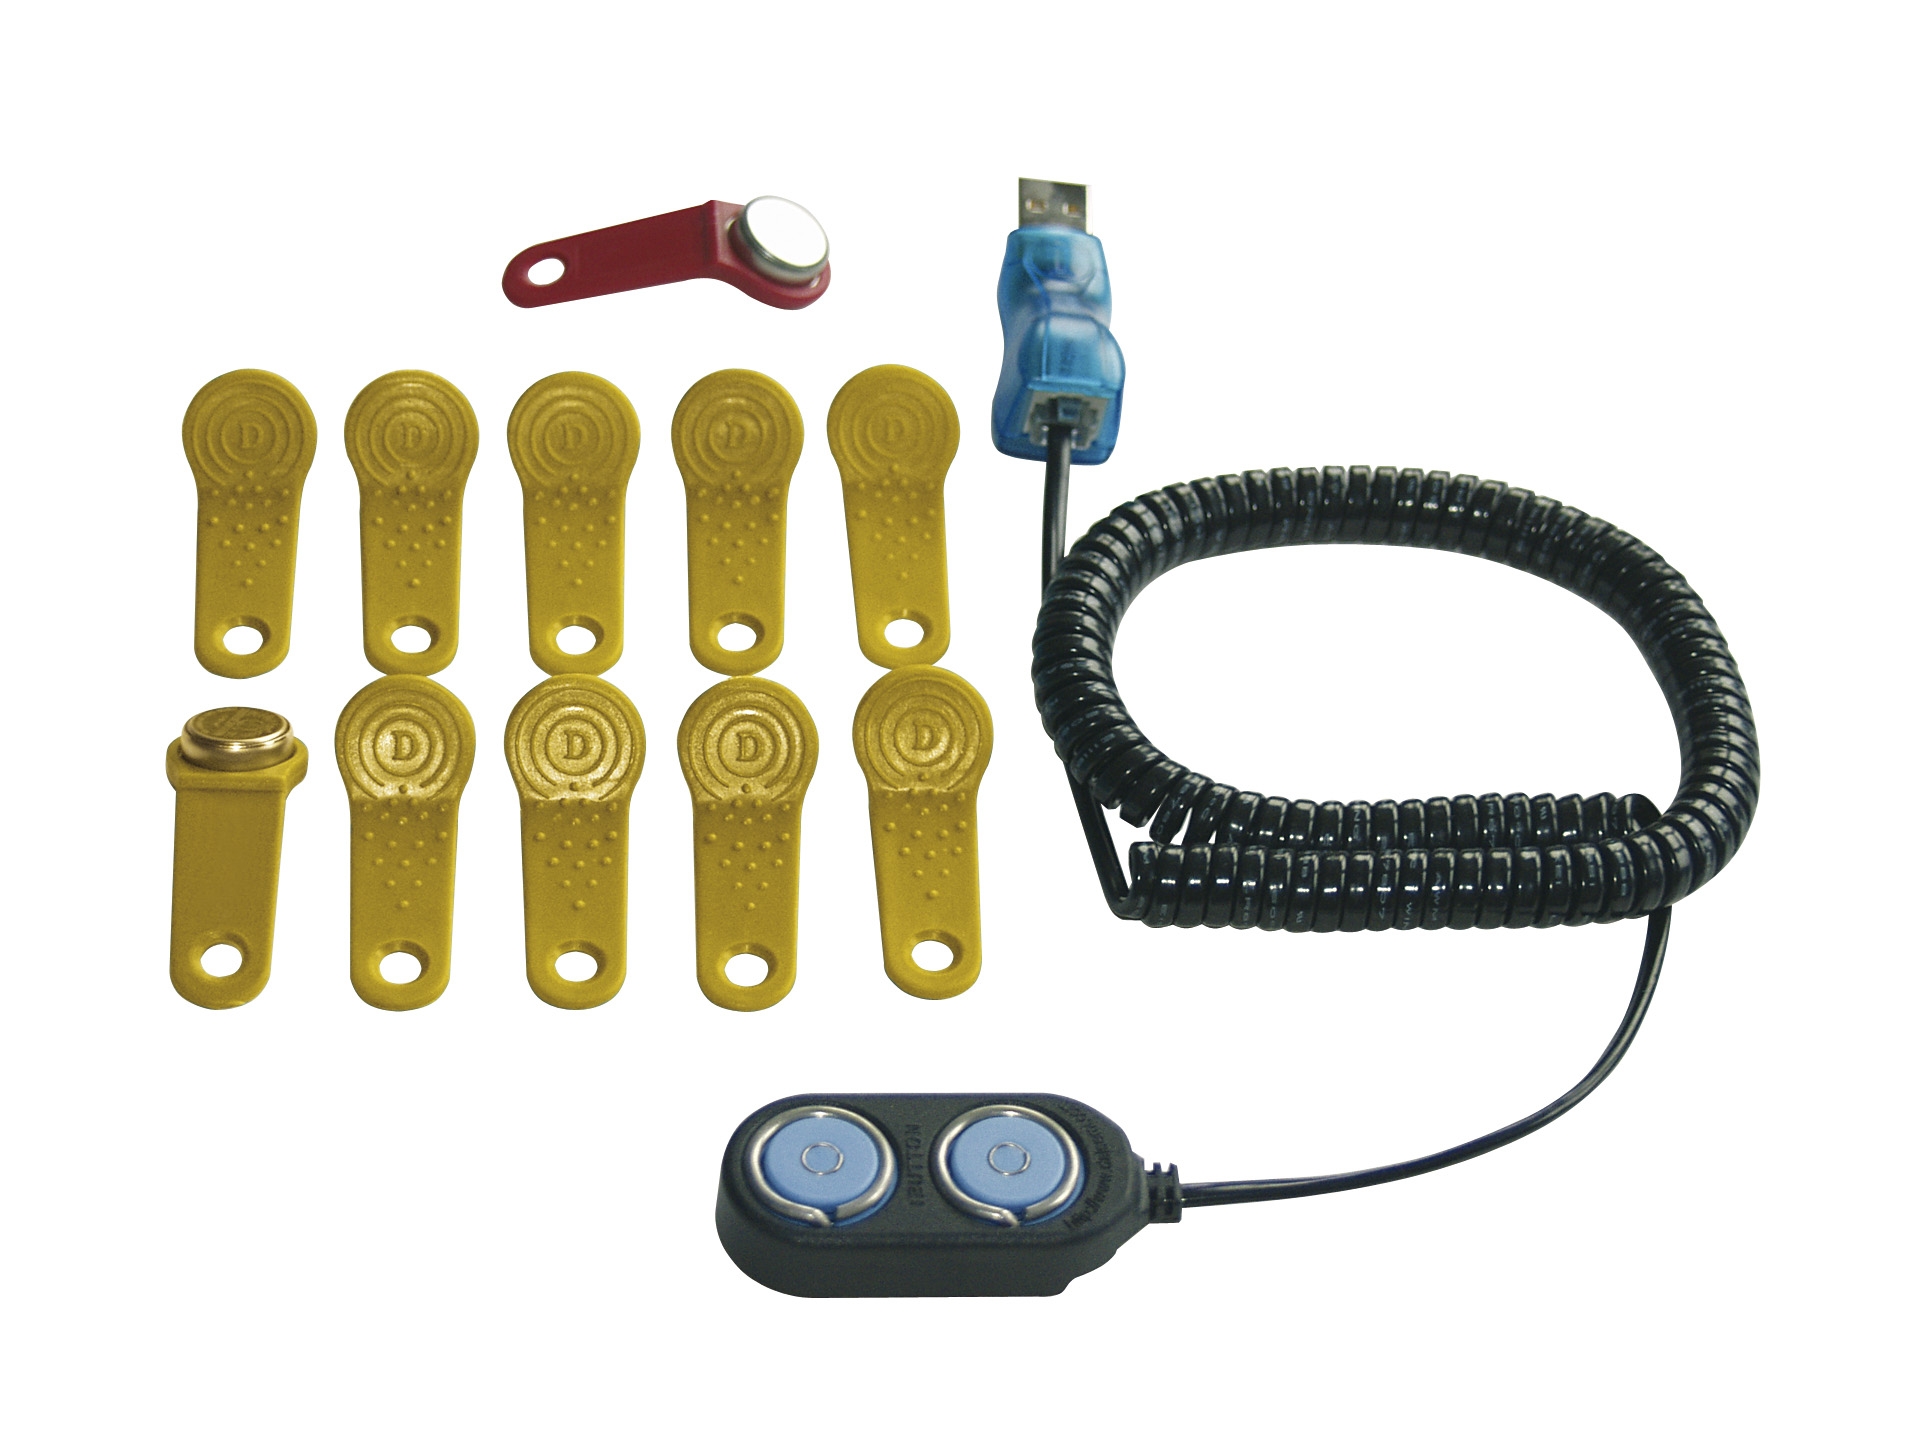 Schlüsselset mit Masterschlüssel und 10 Benutzerschlüssel sowie Schlüssel-Leser, Adapter, Elektronik